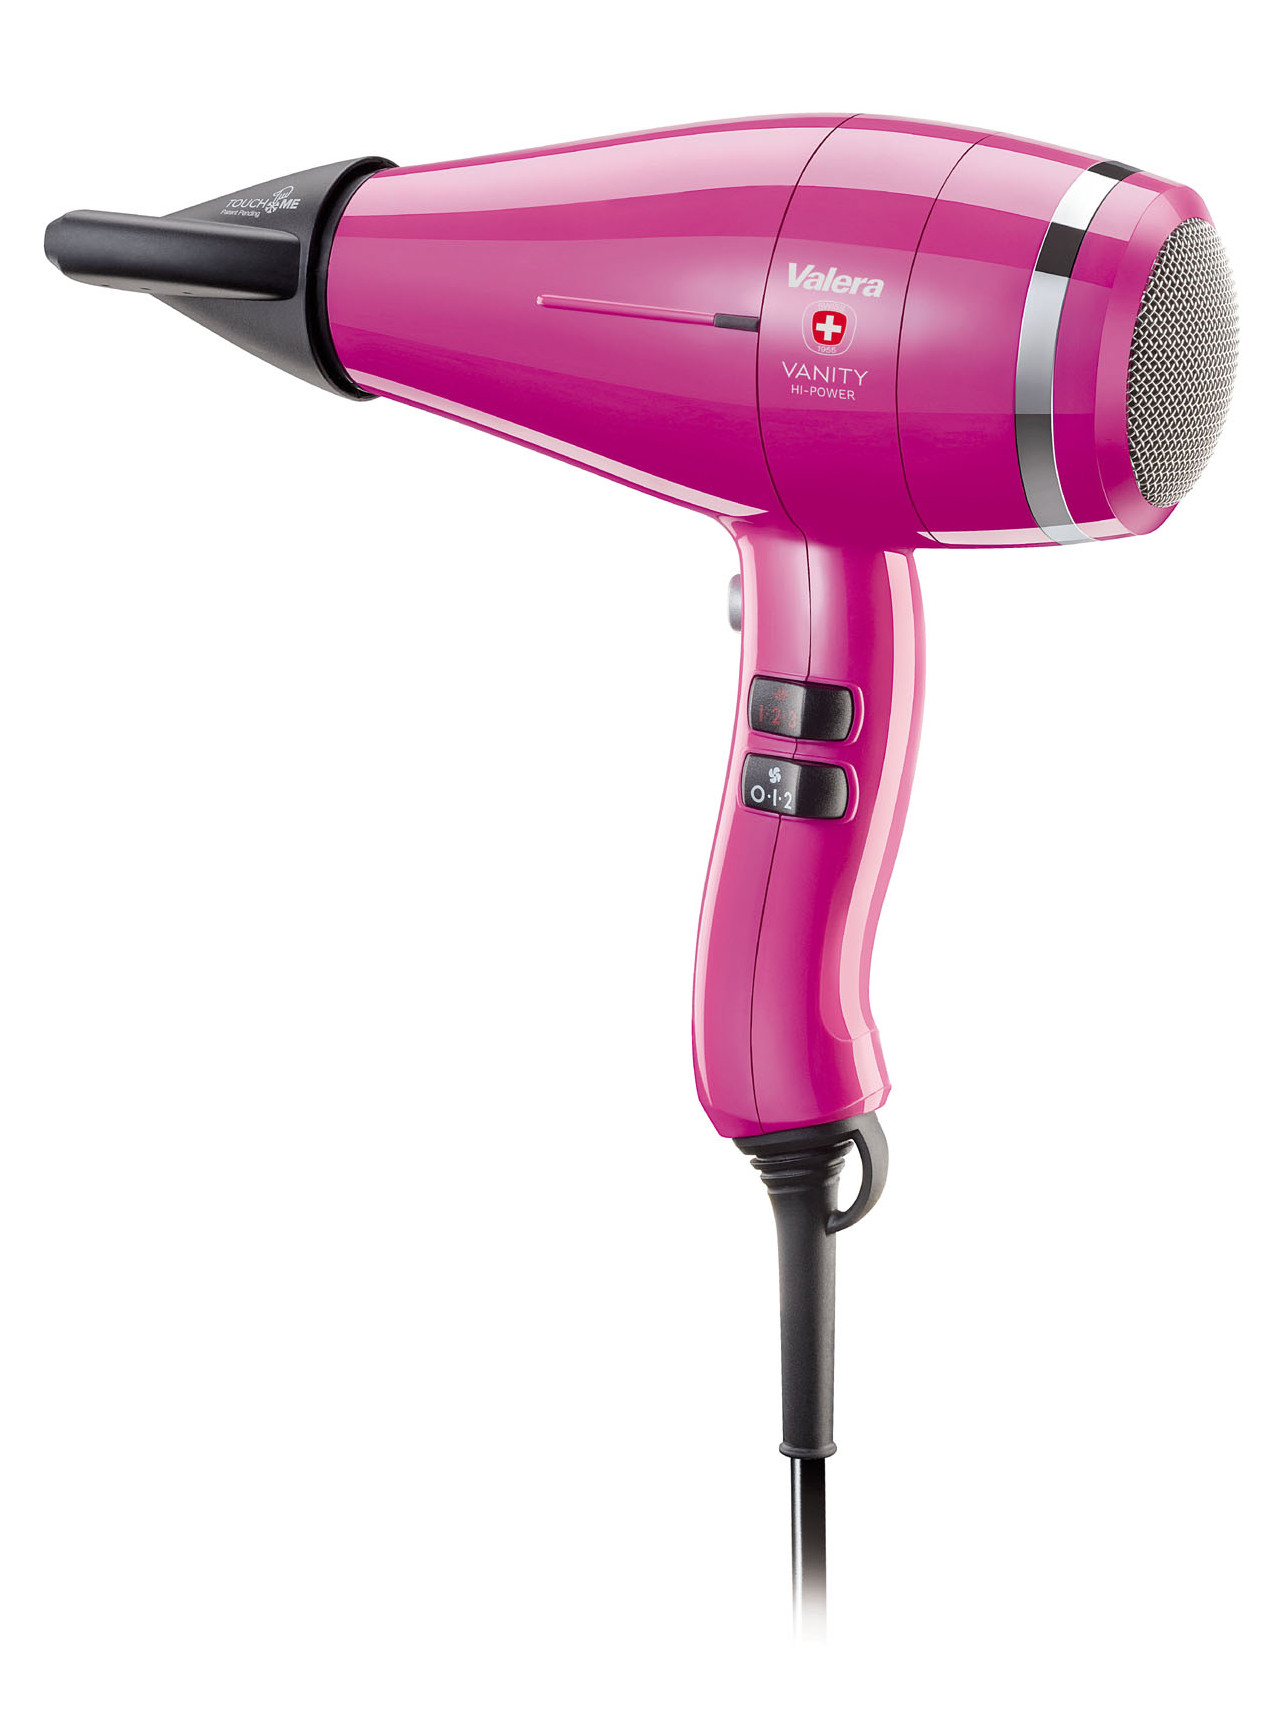 Profesionálny fén Valera Vanity Hi-Power Hot Pink - 2400 W, ružový (VA8605RCHP) + DARČEK ZADARMO.